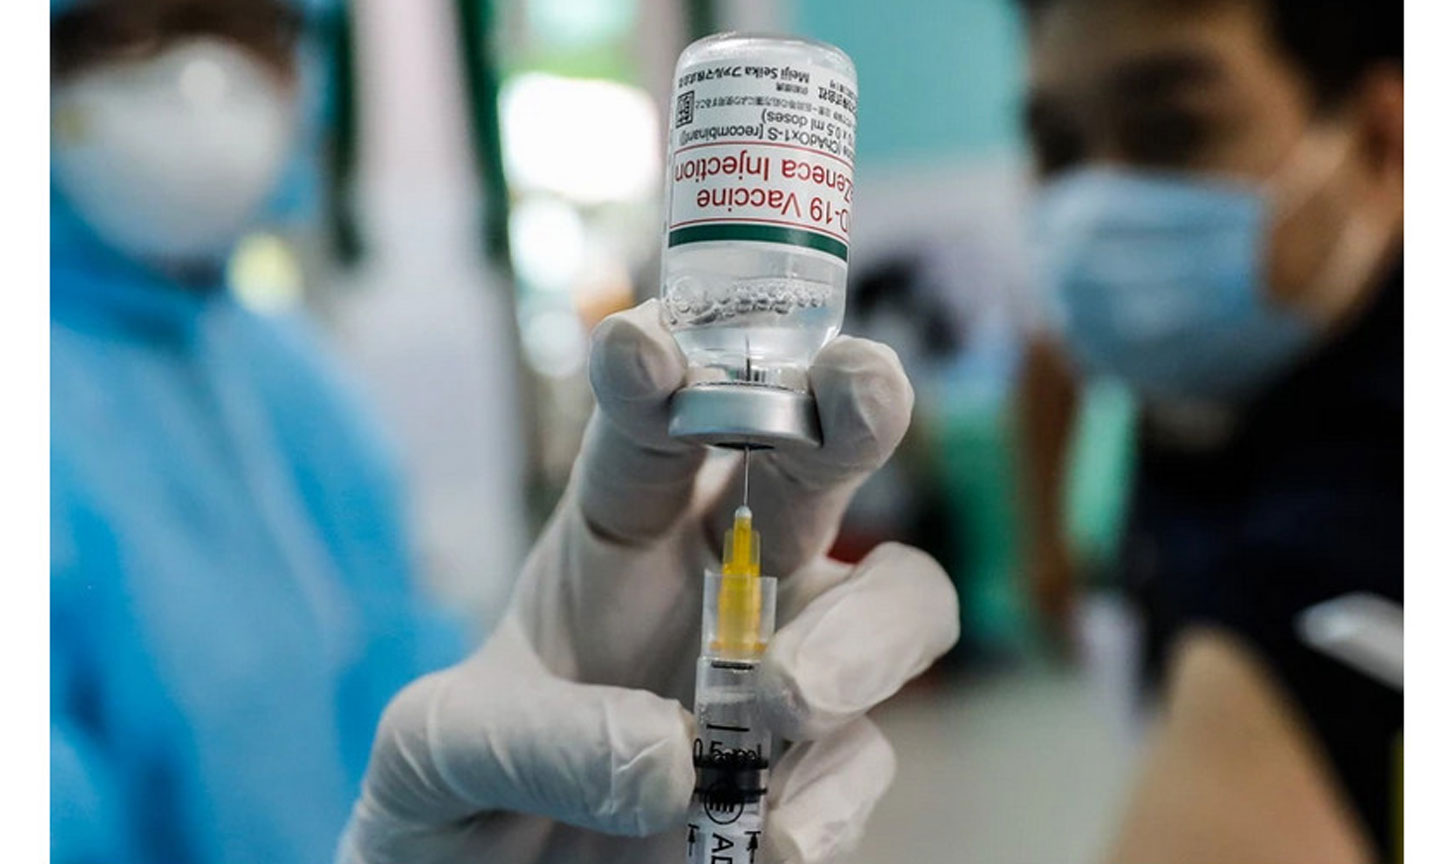 Tại Việt Nam, phần lớn người dân đã tiêm vaccine phòng Covid-19 của AstraZeneca từ một năm về trước. Ảnh: HỮU KHOA  Hướng dẫn mới nhất